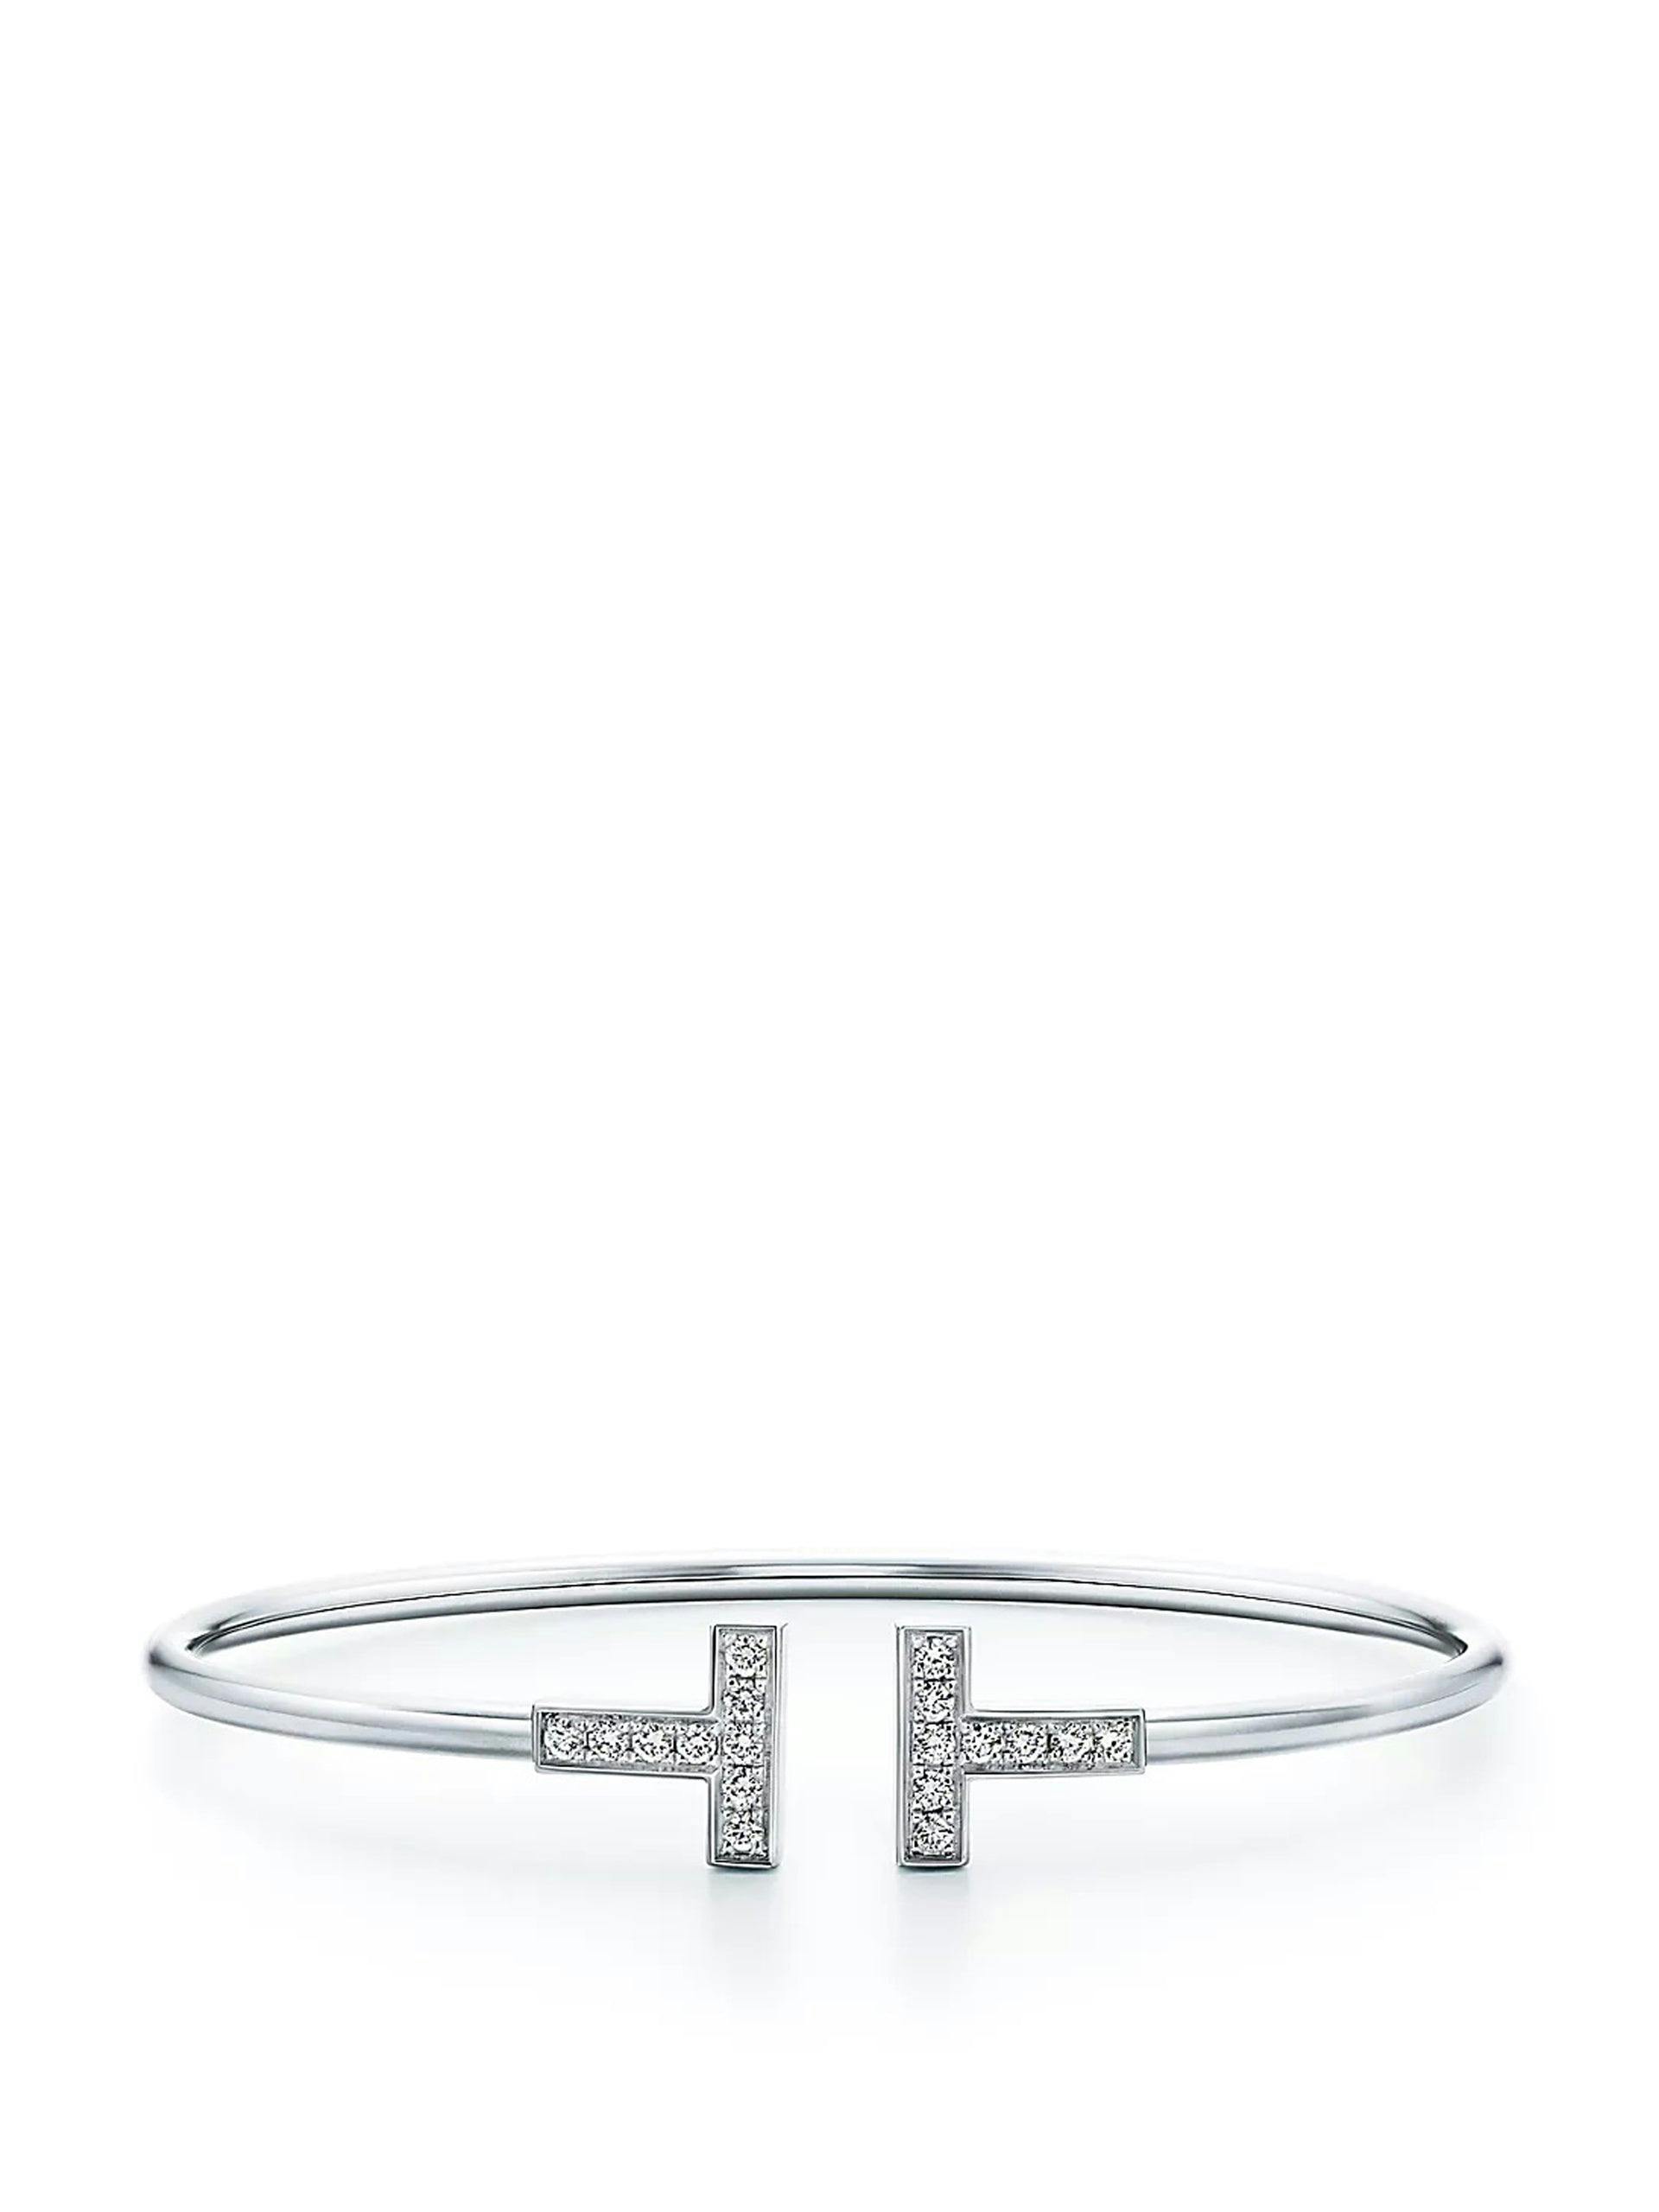 Diamond wire bracelet